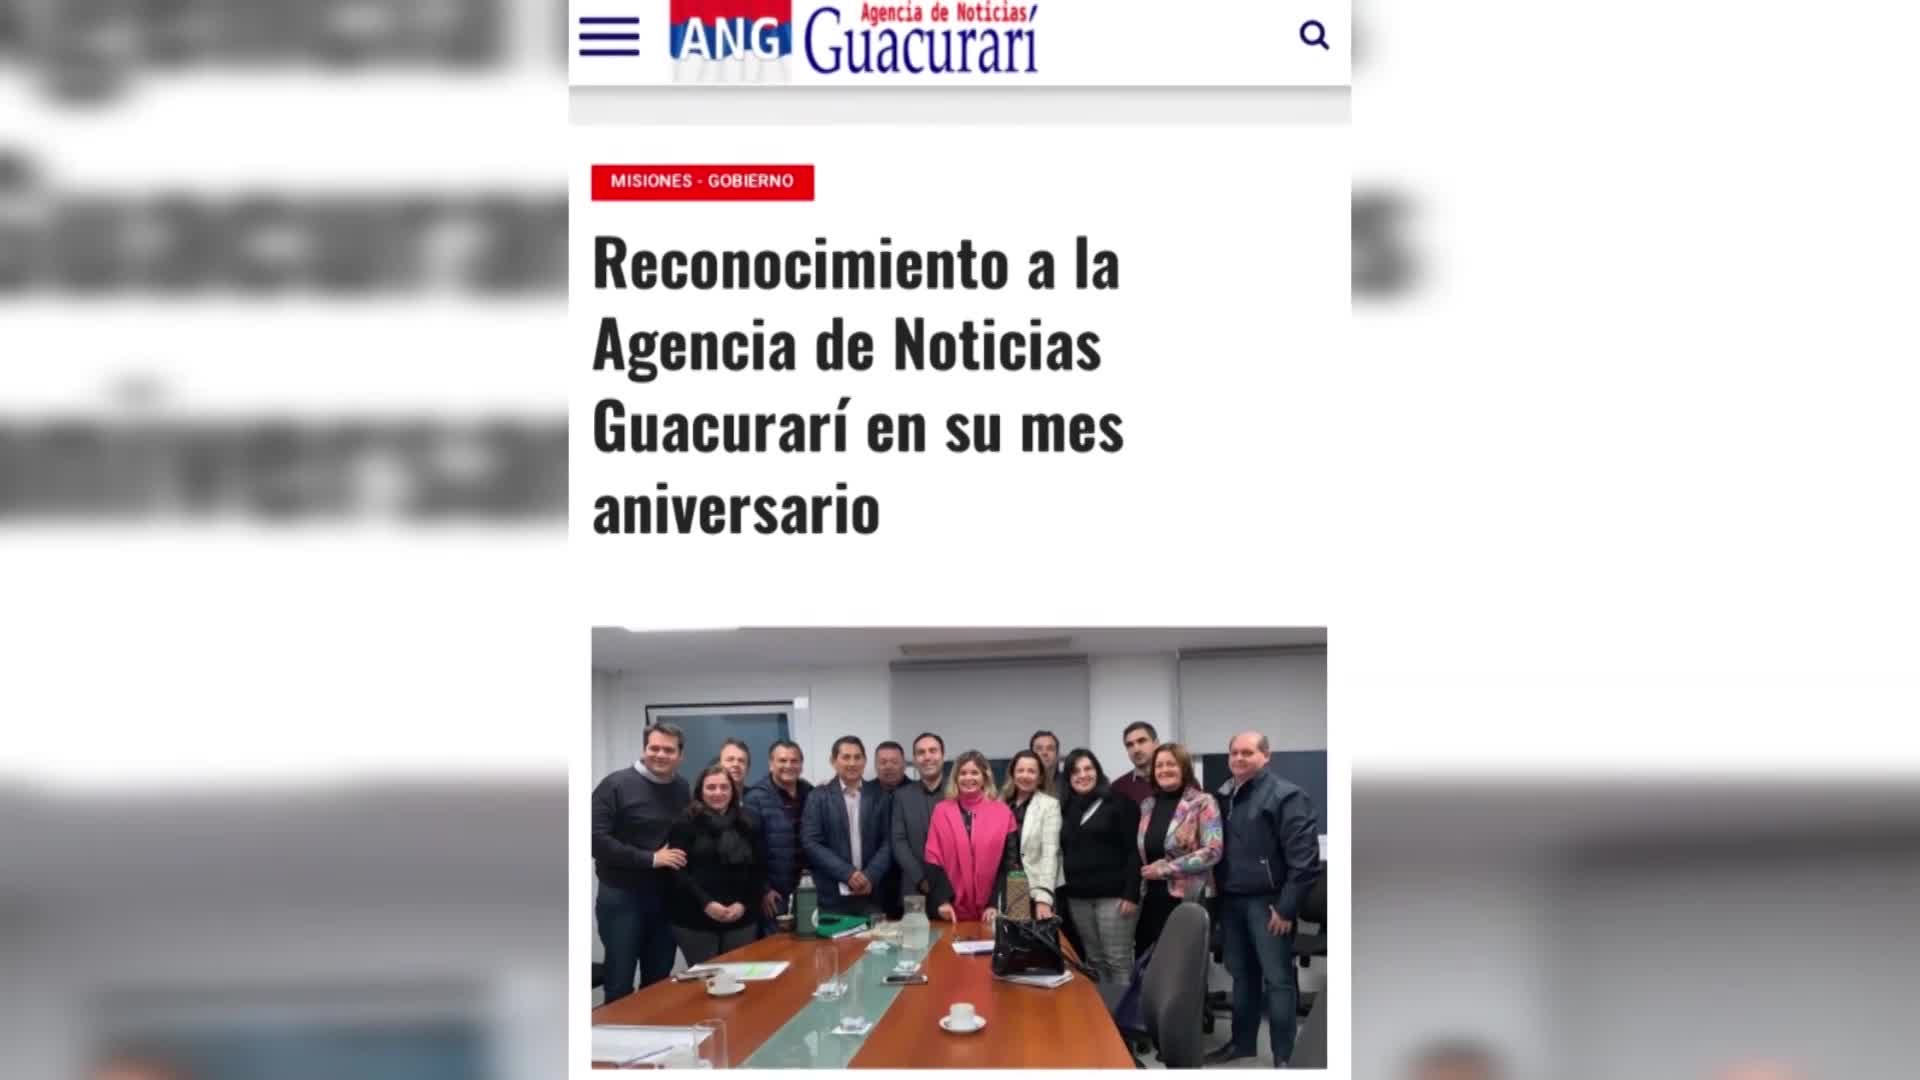 Integrada por 60 periodistas la agencia de noticias Guacurarí cumplió 2 años